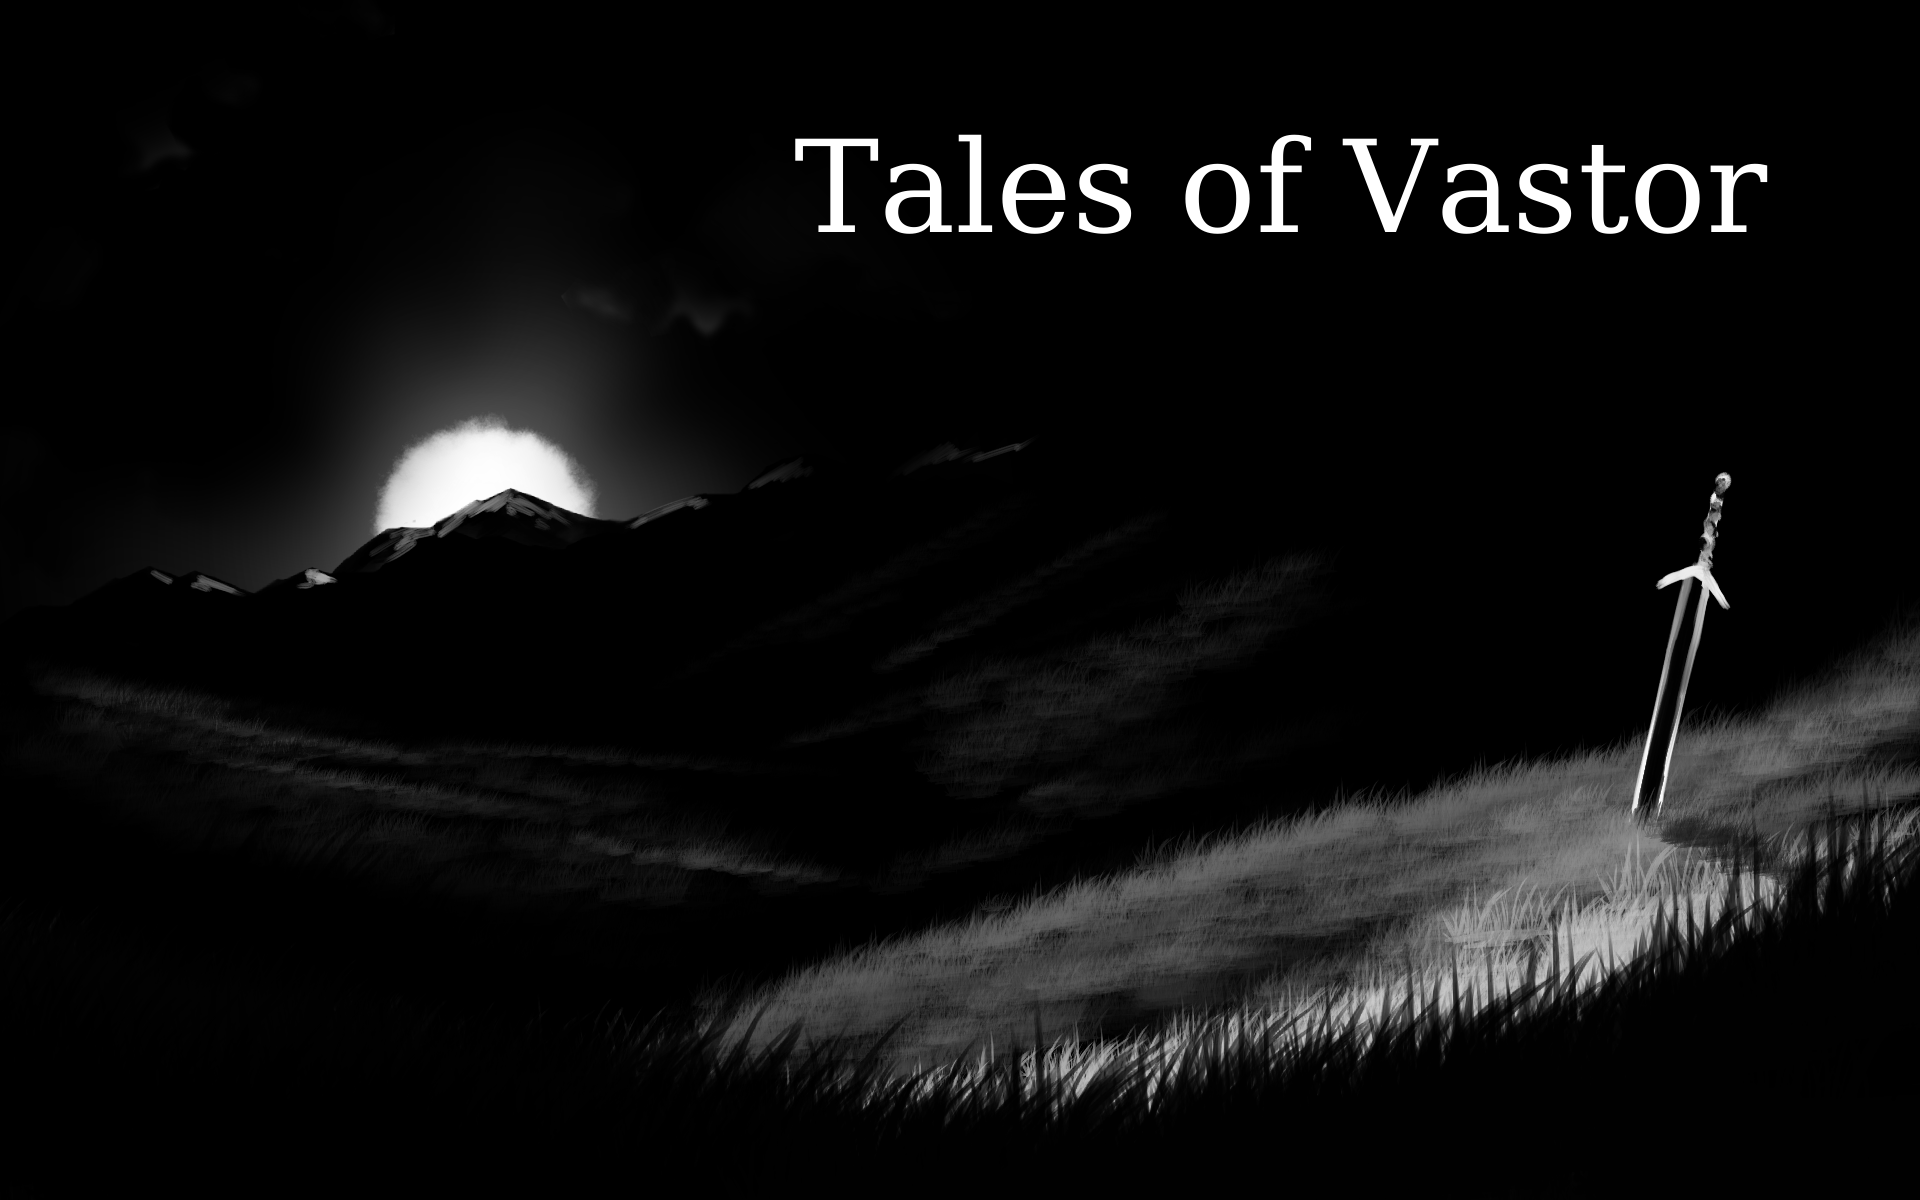 Tales of Vastor